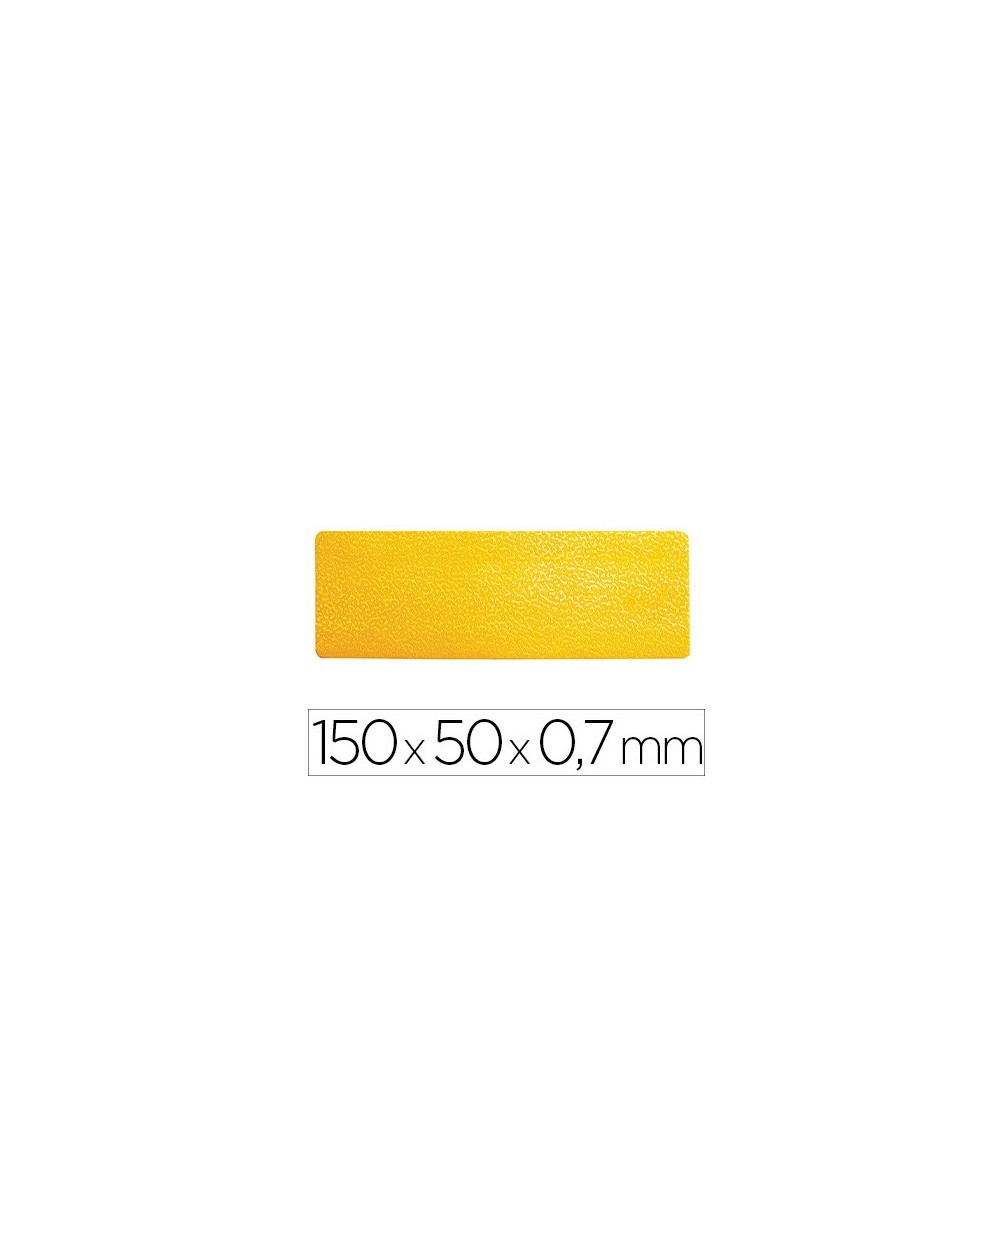 Simbolo adhesivo durable pvc forma de linea para delimitacion suelo amarillo 150x50x07 mm pack de 10